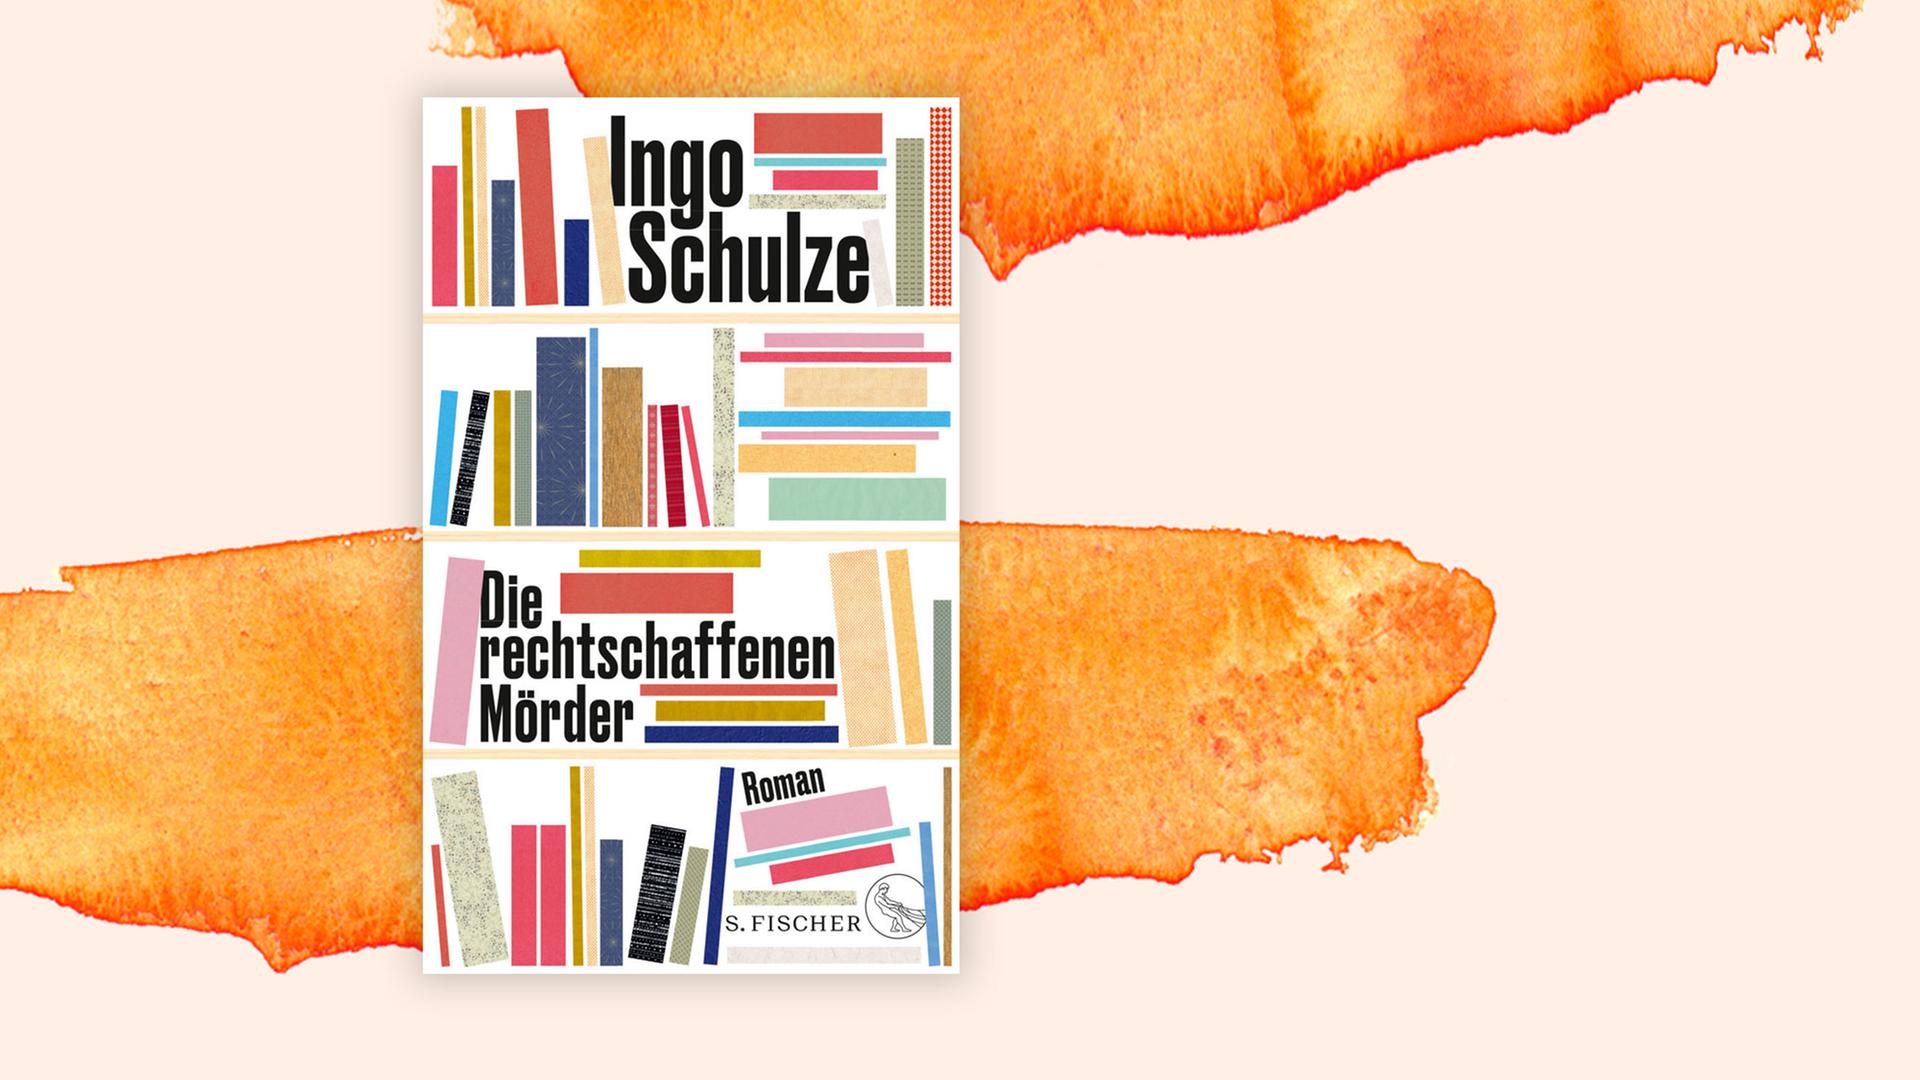 Das Bild zeigt das Cover des neuen Buchs von Ingo Schulze. Es heißt "Die rechtschaffenen Mörder".